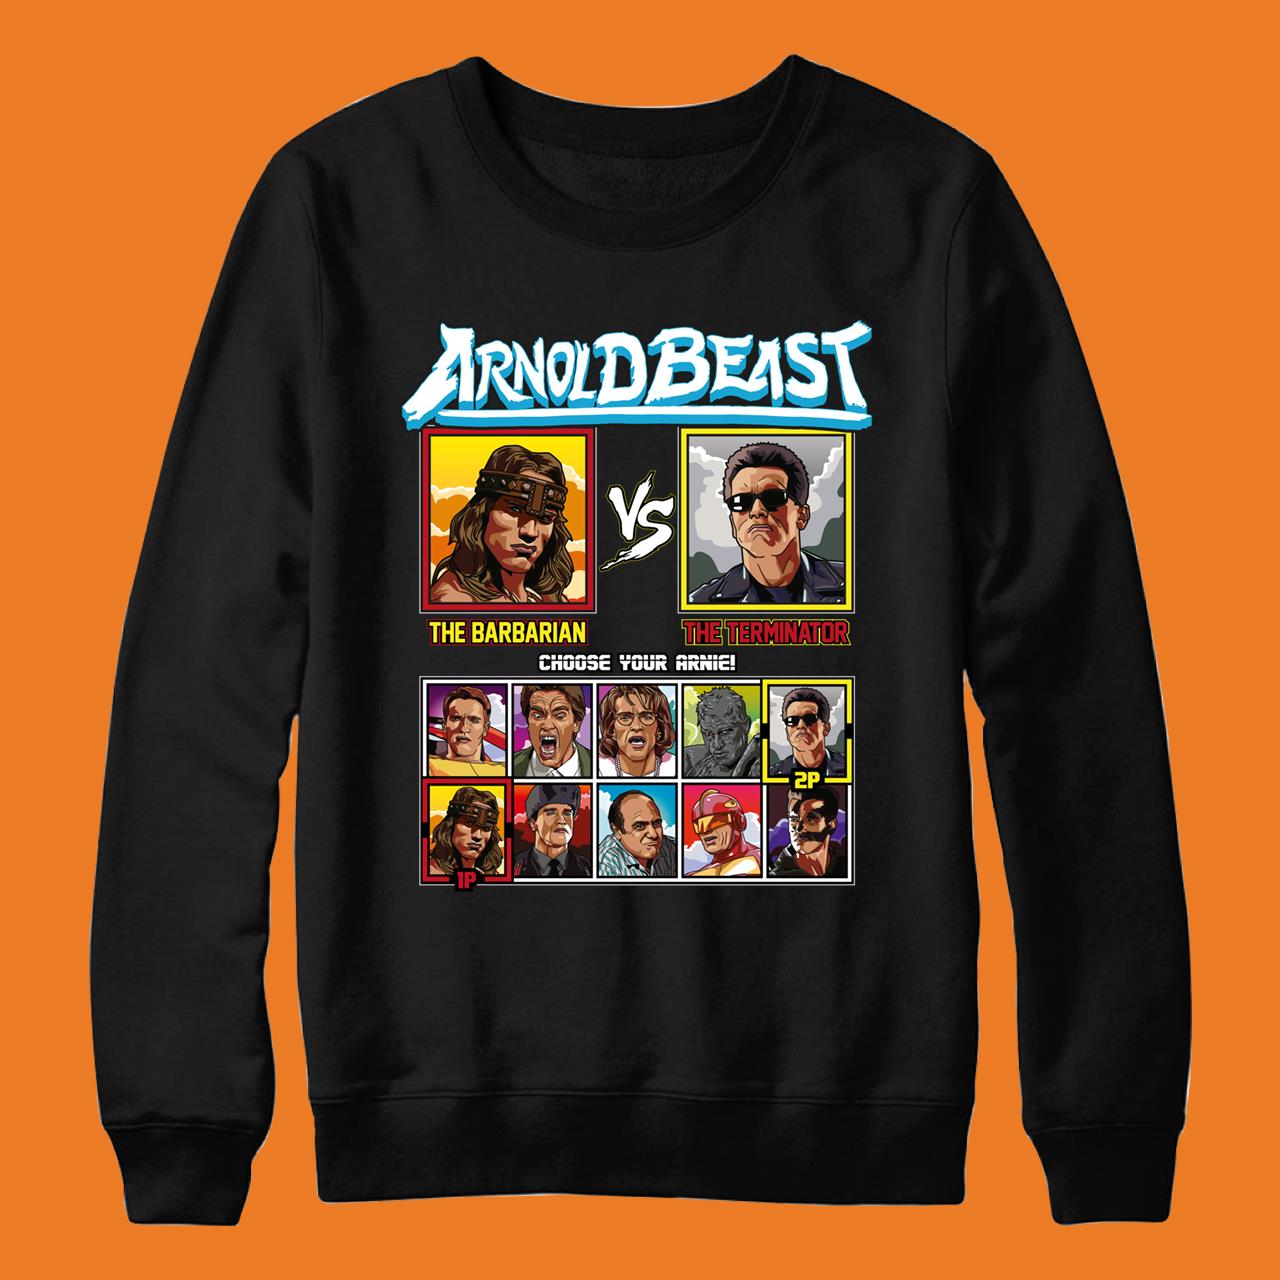 Arnold Schwarzenegger Fighter – Arnold Beast Classic T-Shirt